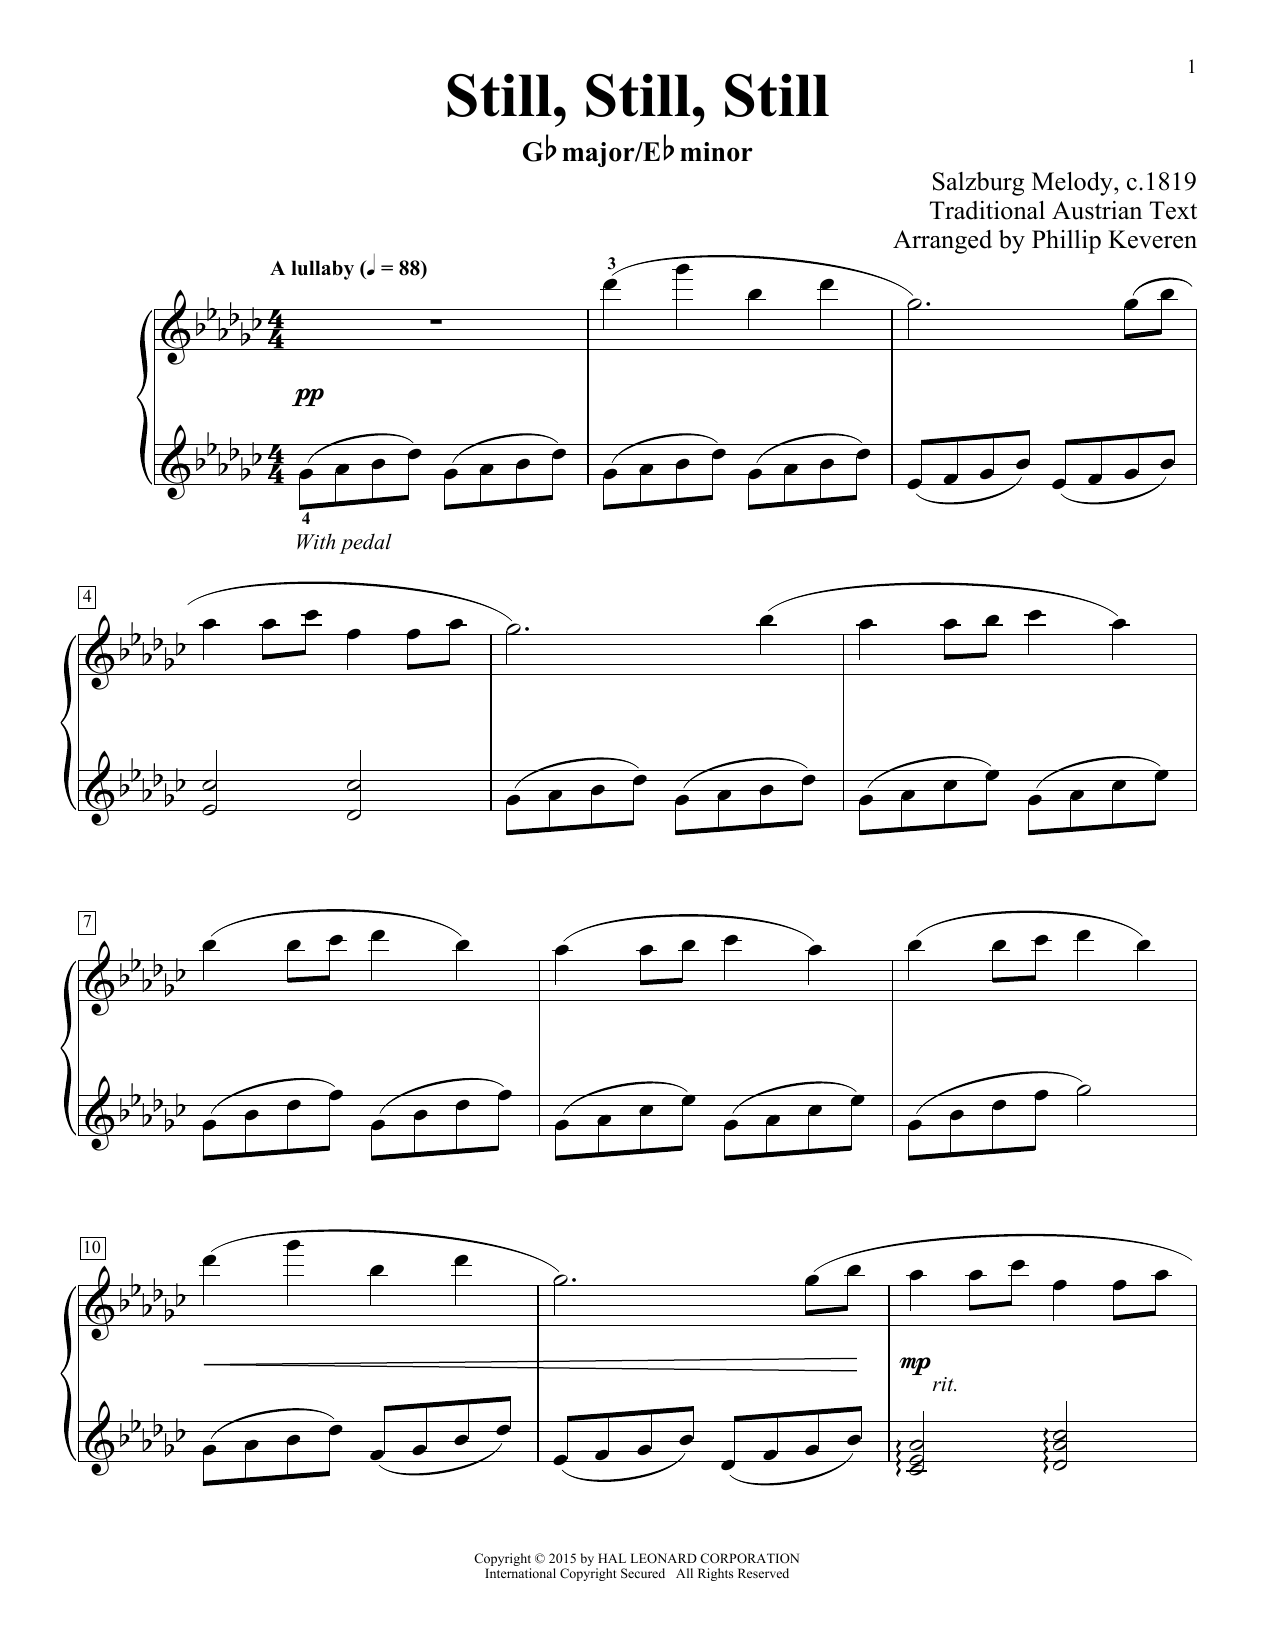 Salzburg Melody Still, Still, Still (arr. Phillip Keveren) sheet music notes and chords arranged for Piano Solo